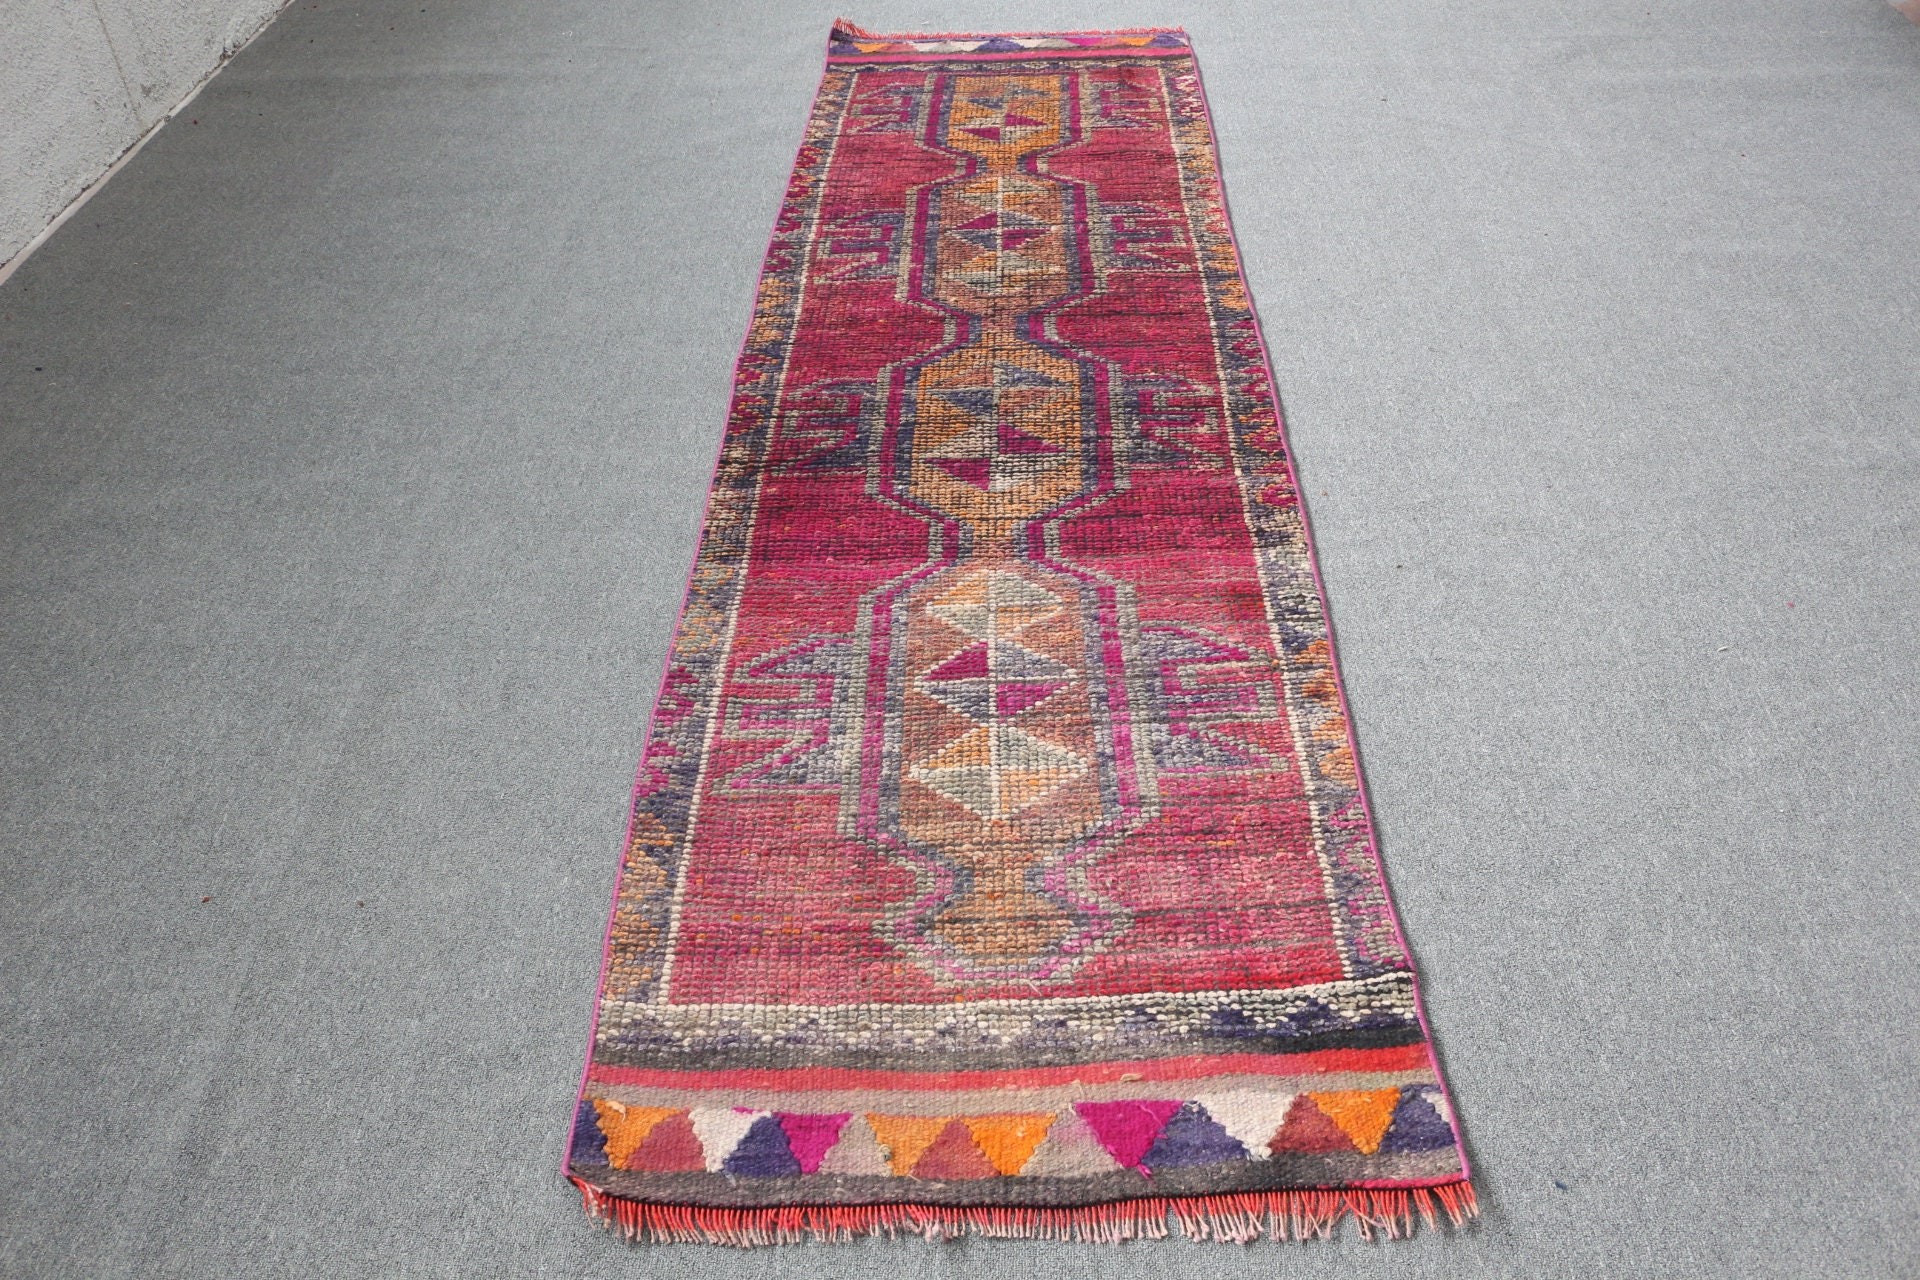 Moroccan Rug, Rugs for Stair, 2.7x9.4 ft Runner Rug, Cute Rugs, Stair Rugs, Turkish Rug, Oriental Rug, Vintage Rug, Purple Home Decor Rugs